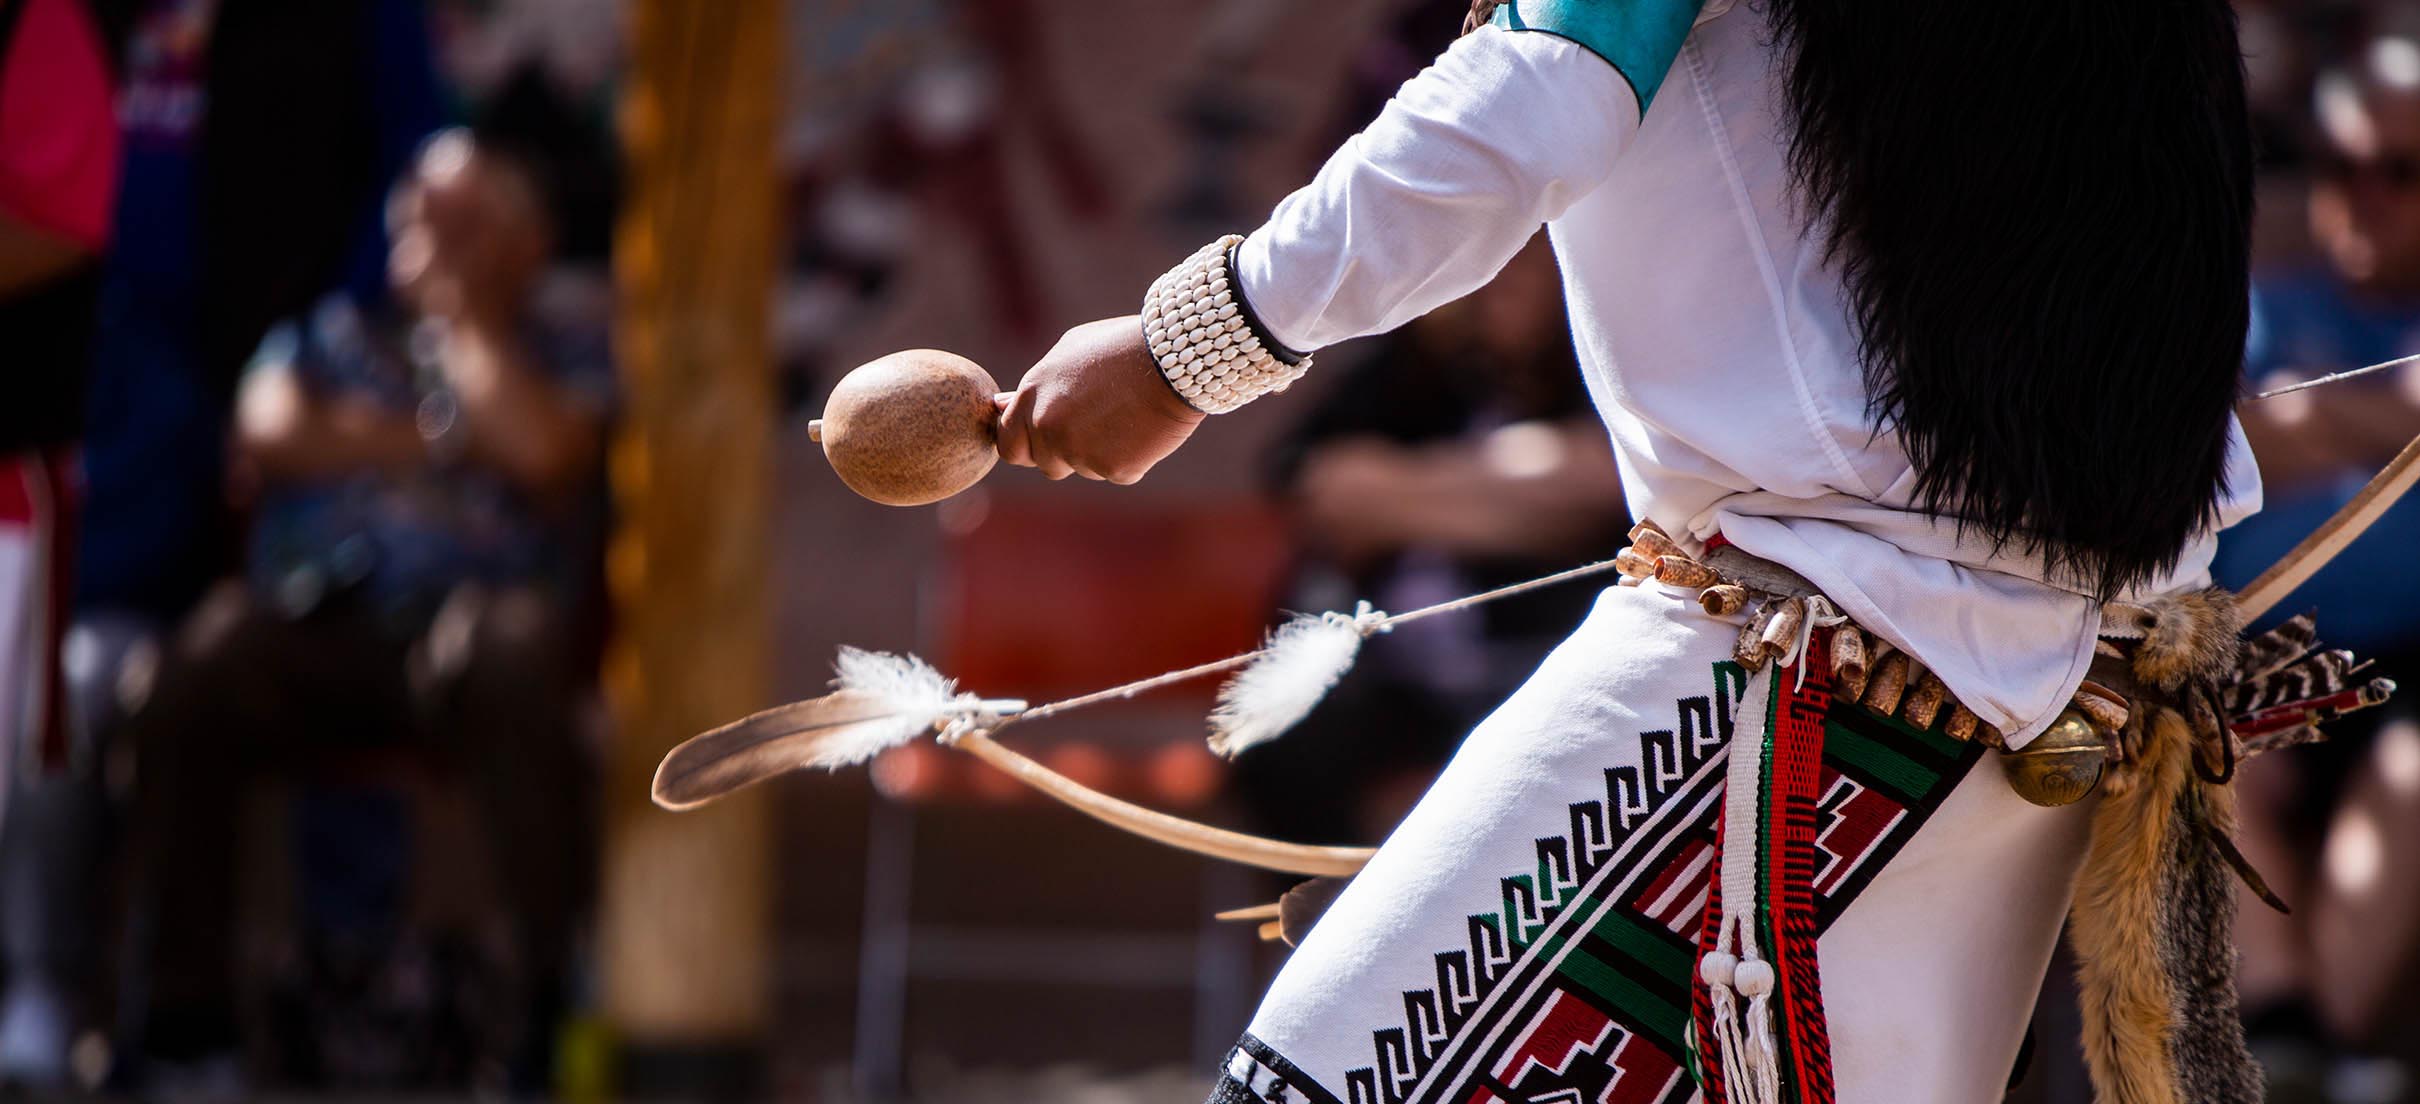 执行仪式舞蹈的美洲原住民